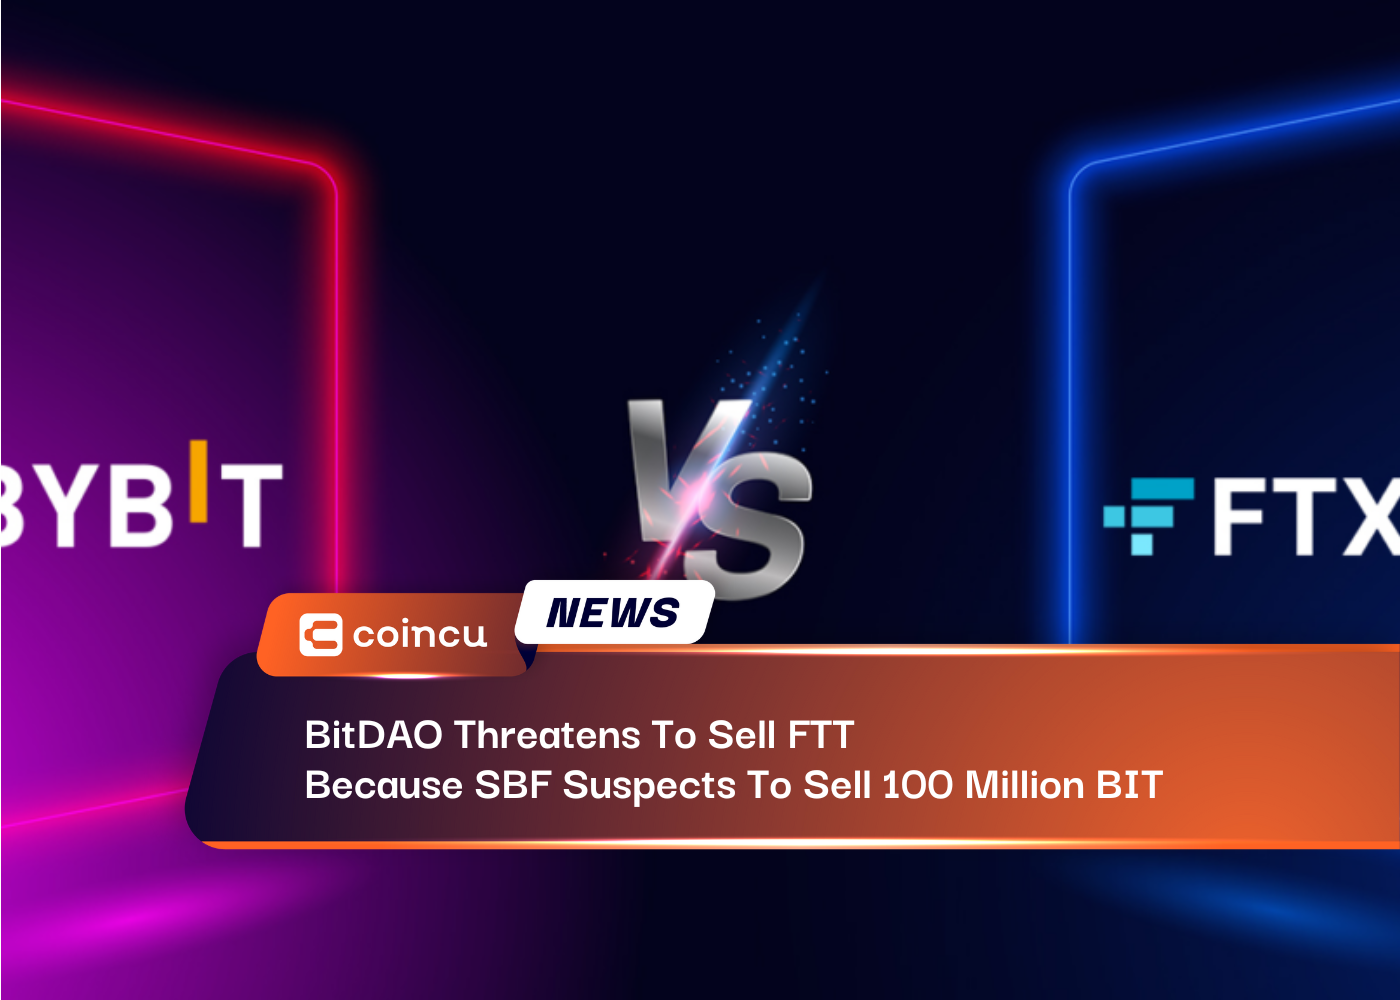 BitDAO đe dọa bán FTT vì SBF nghi ngờ bán 100 triệu BIT